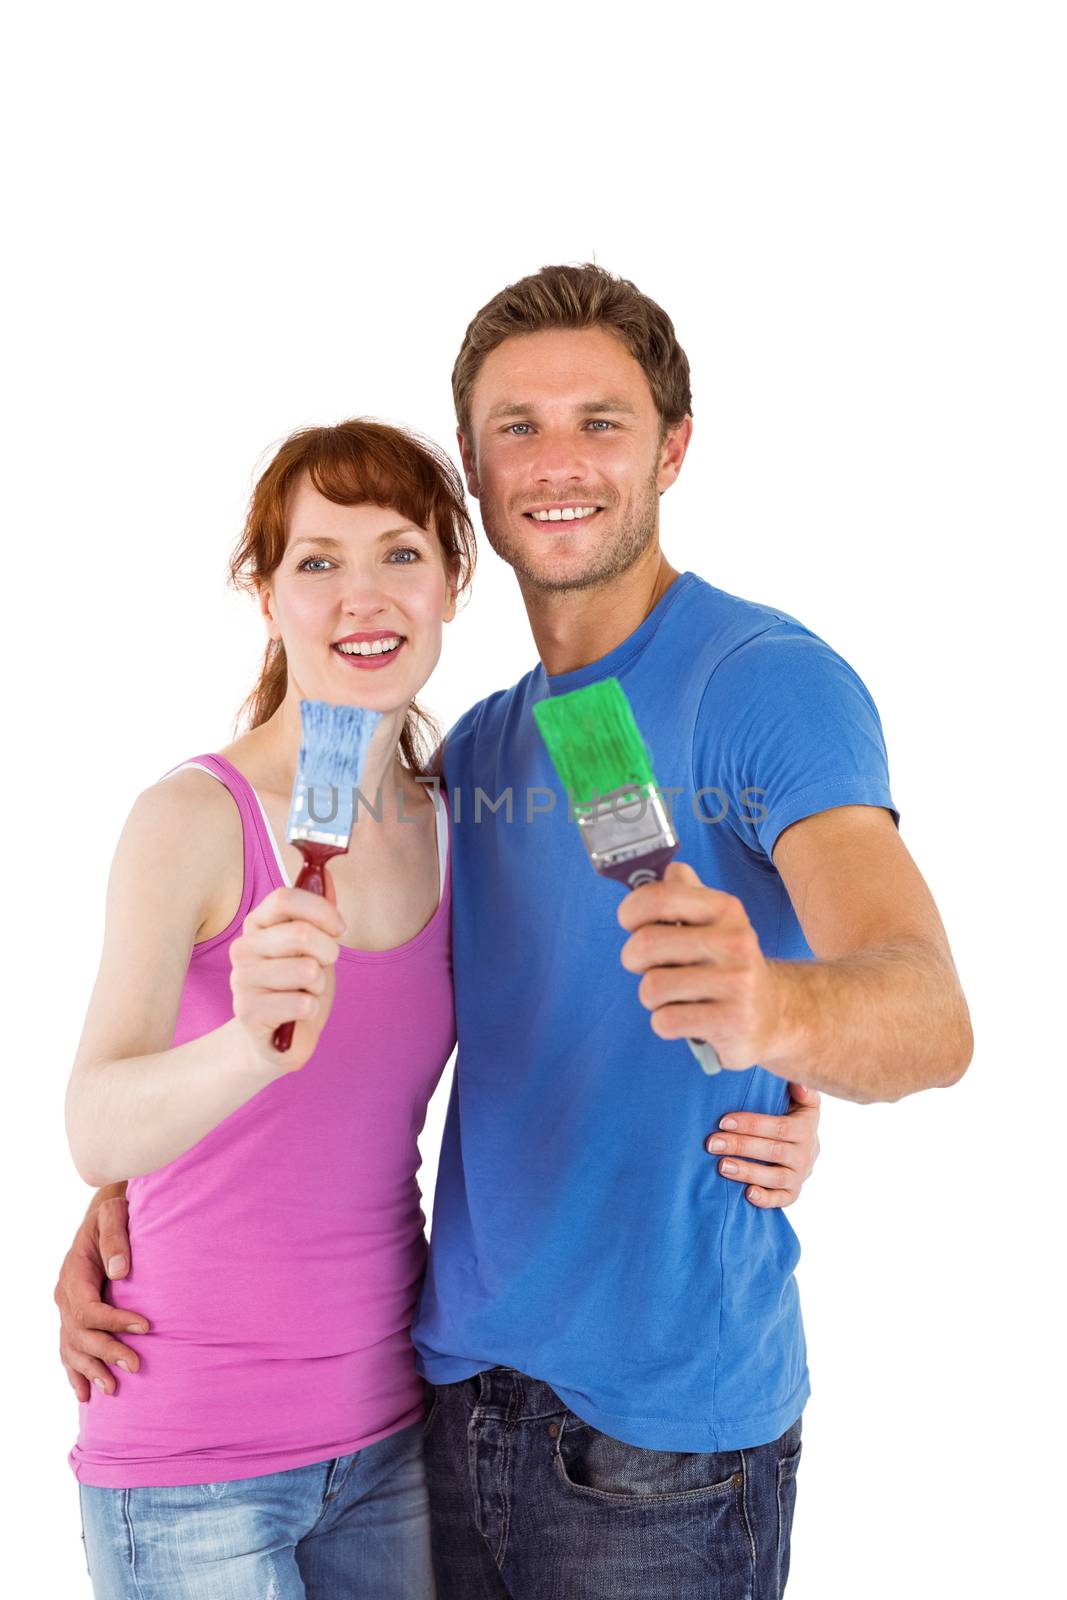 Couple both holding paint brushes by Wavebreakmedia